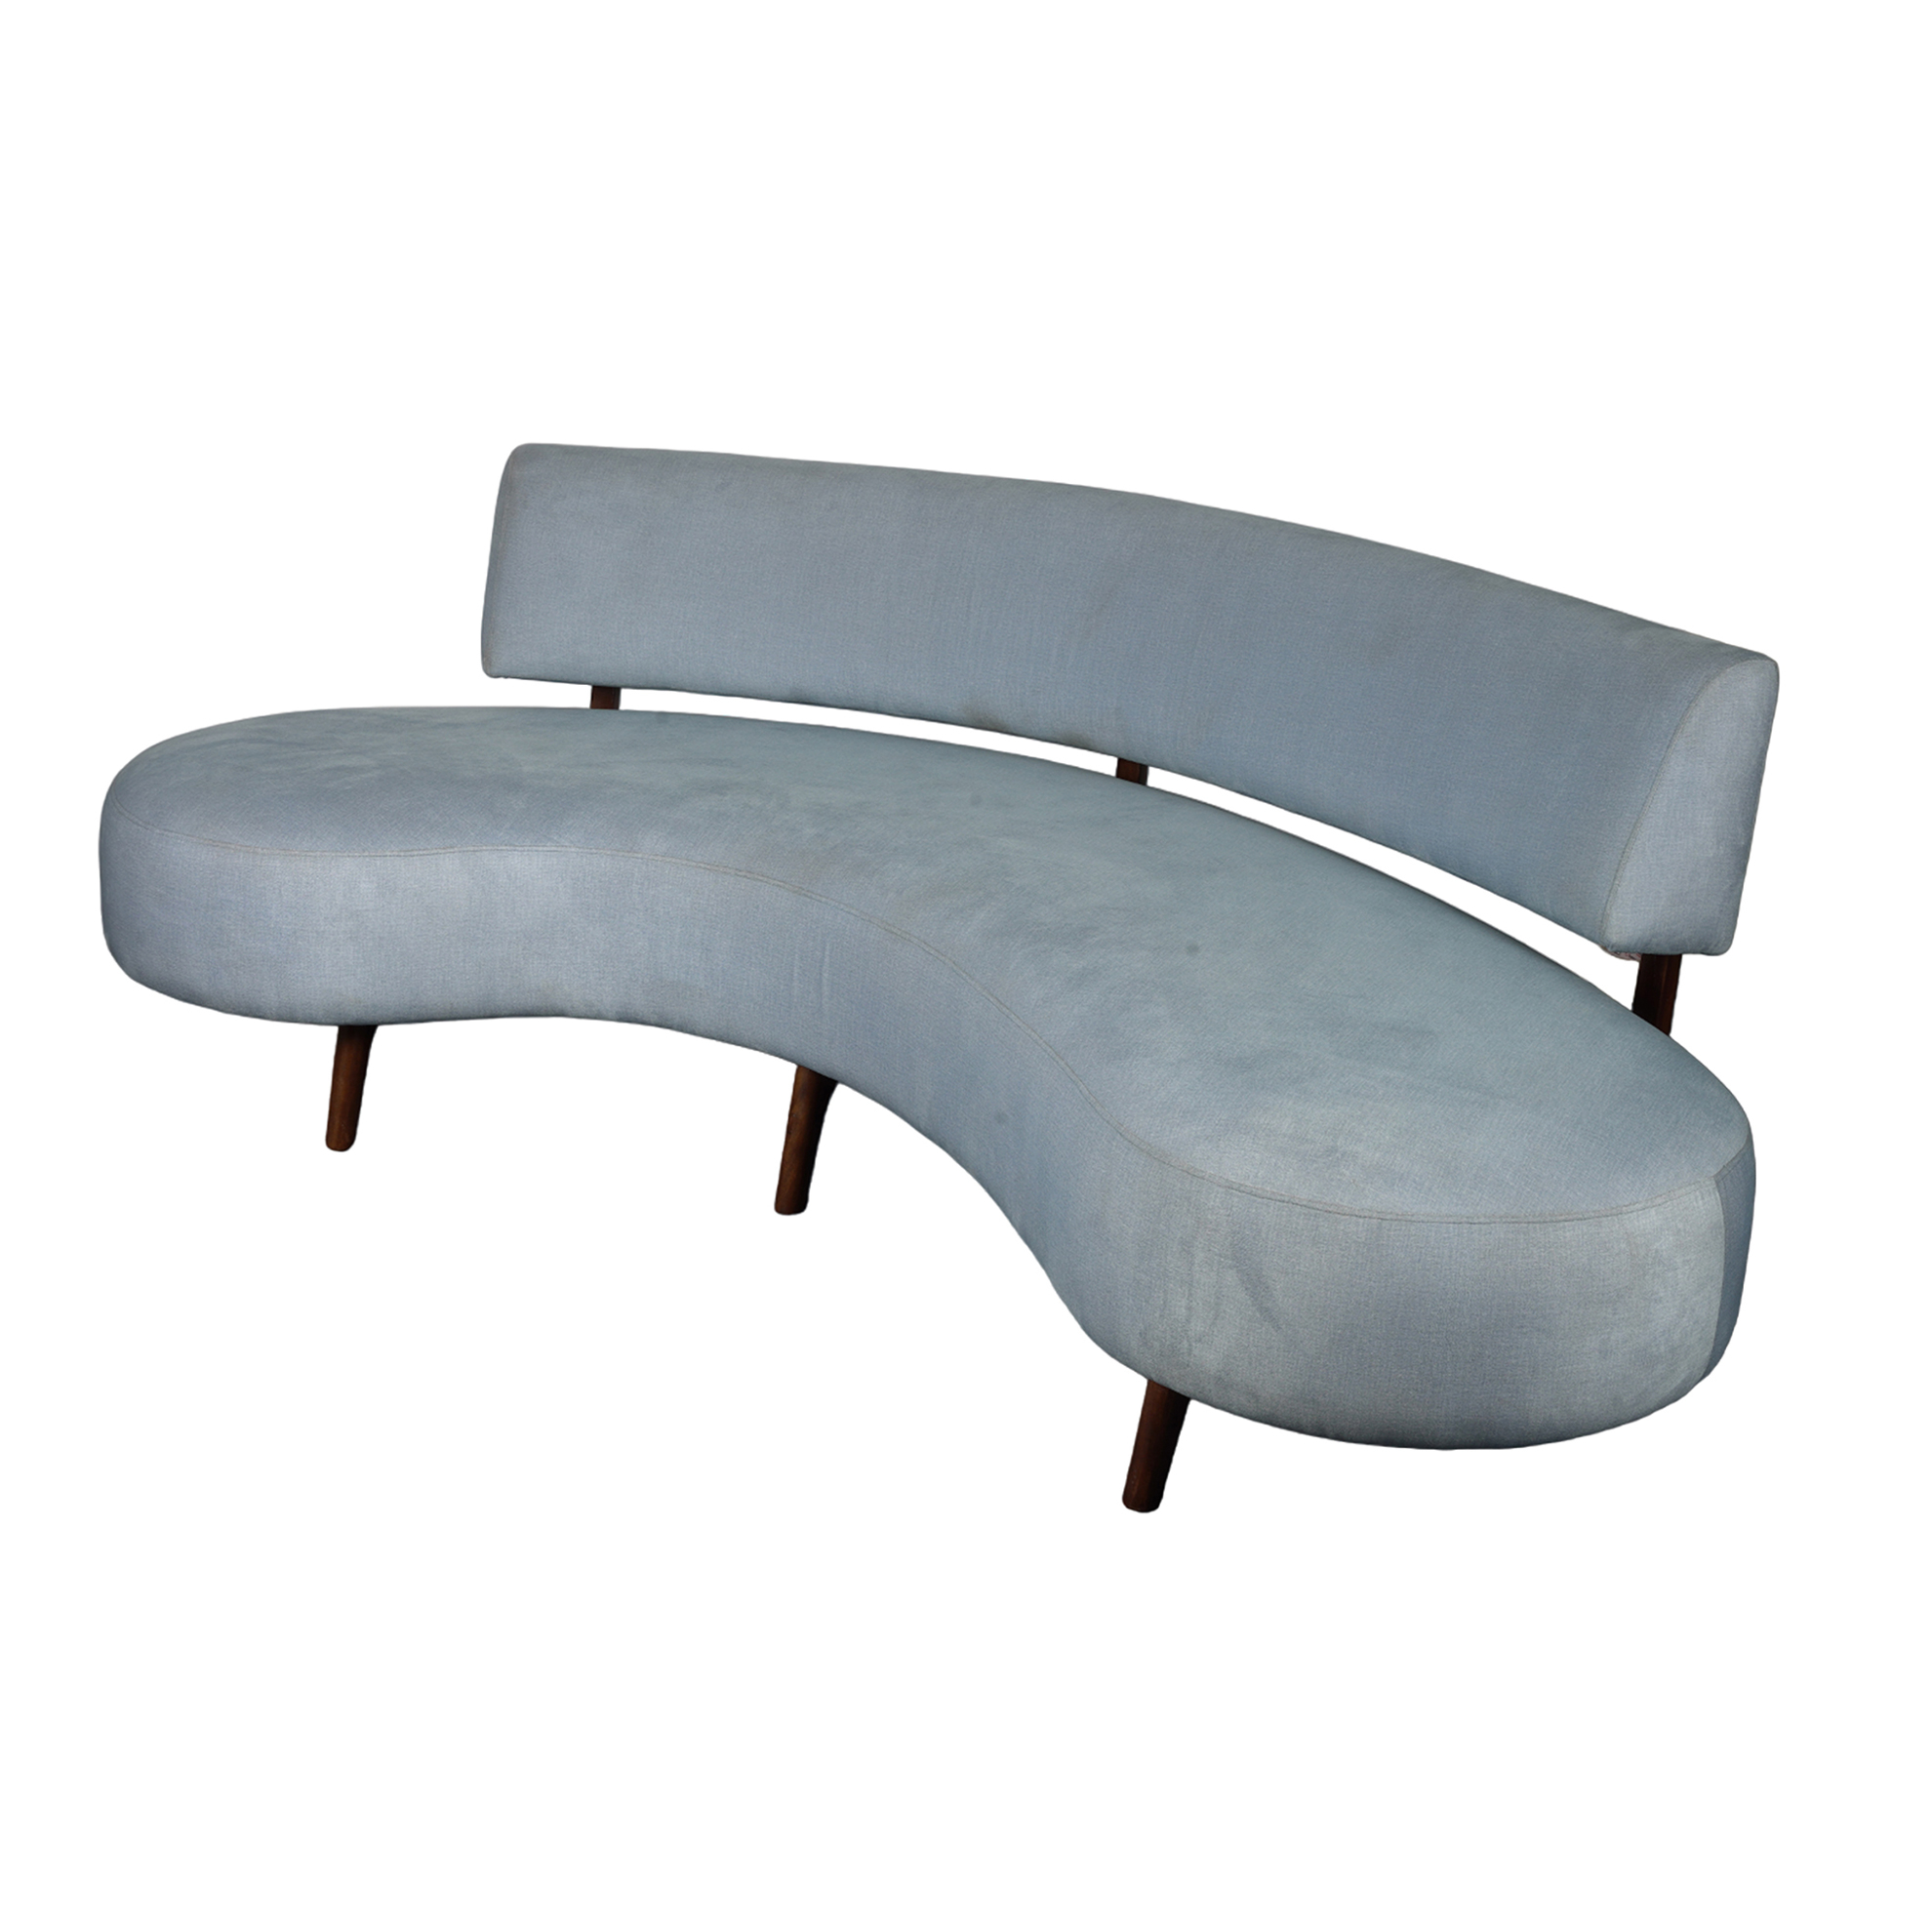 Curved Italian Style Sofa